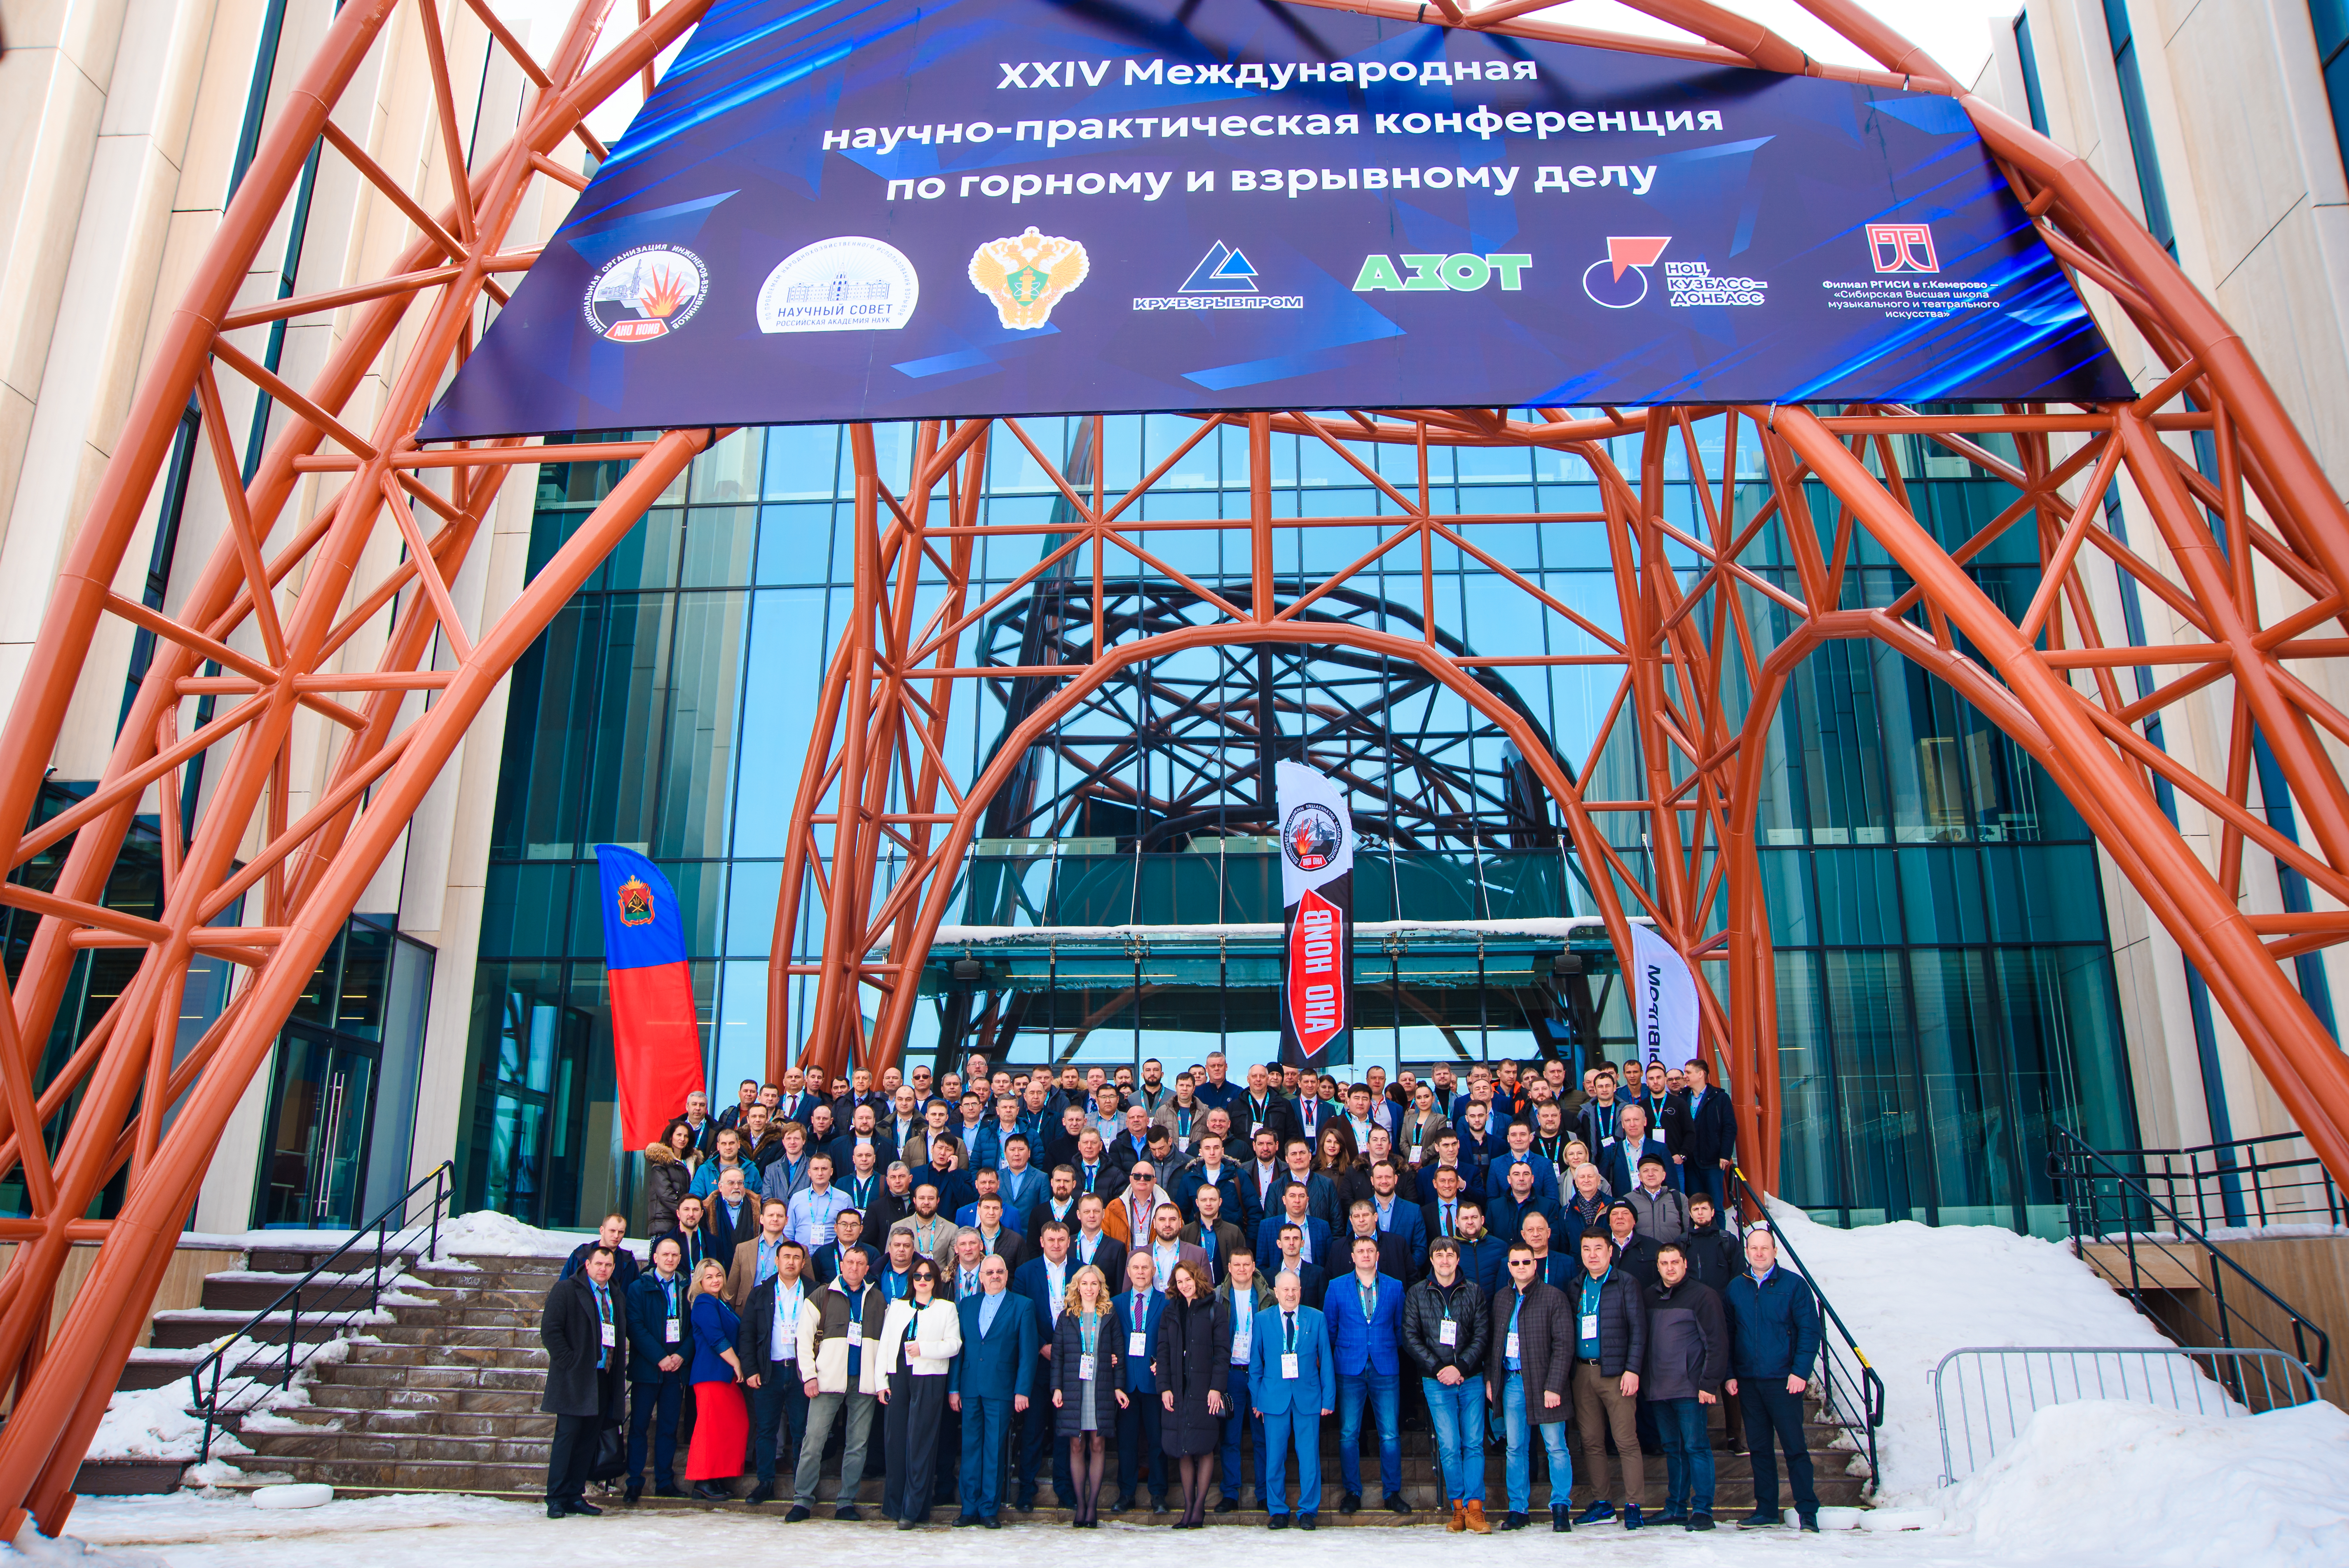 Конференция по горному и взрывному делу в Кузбассе 